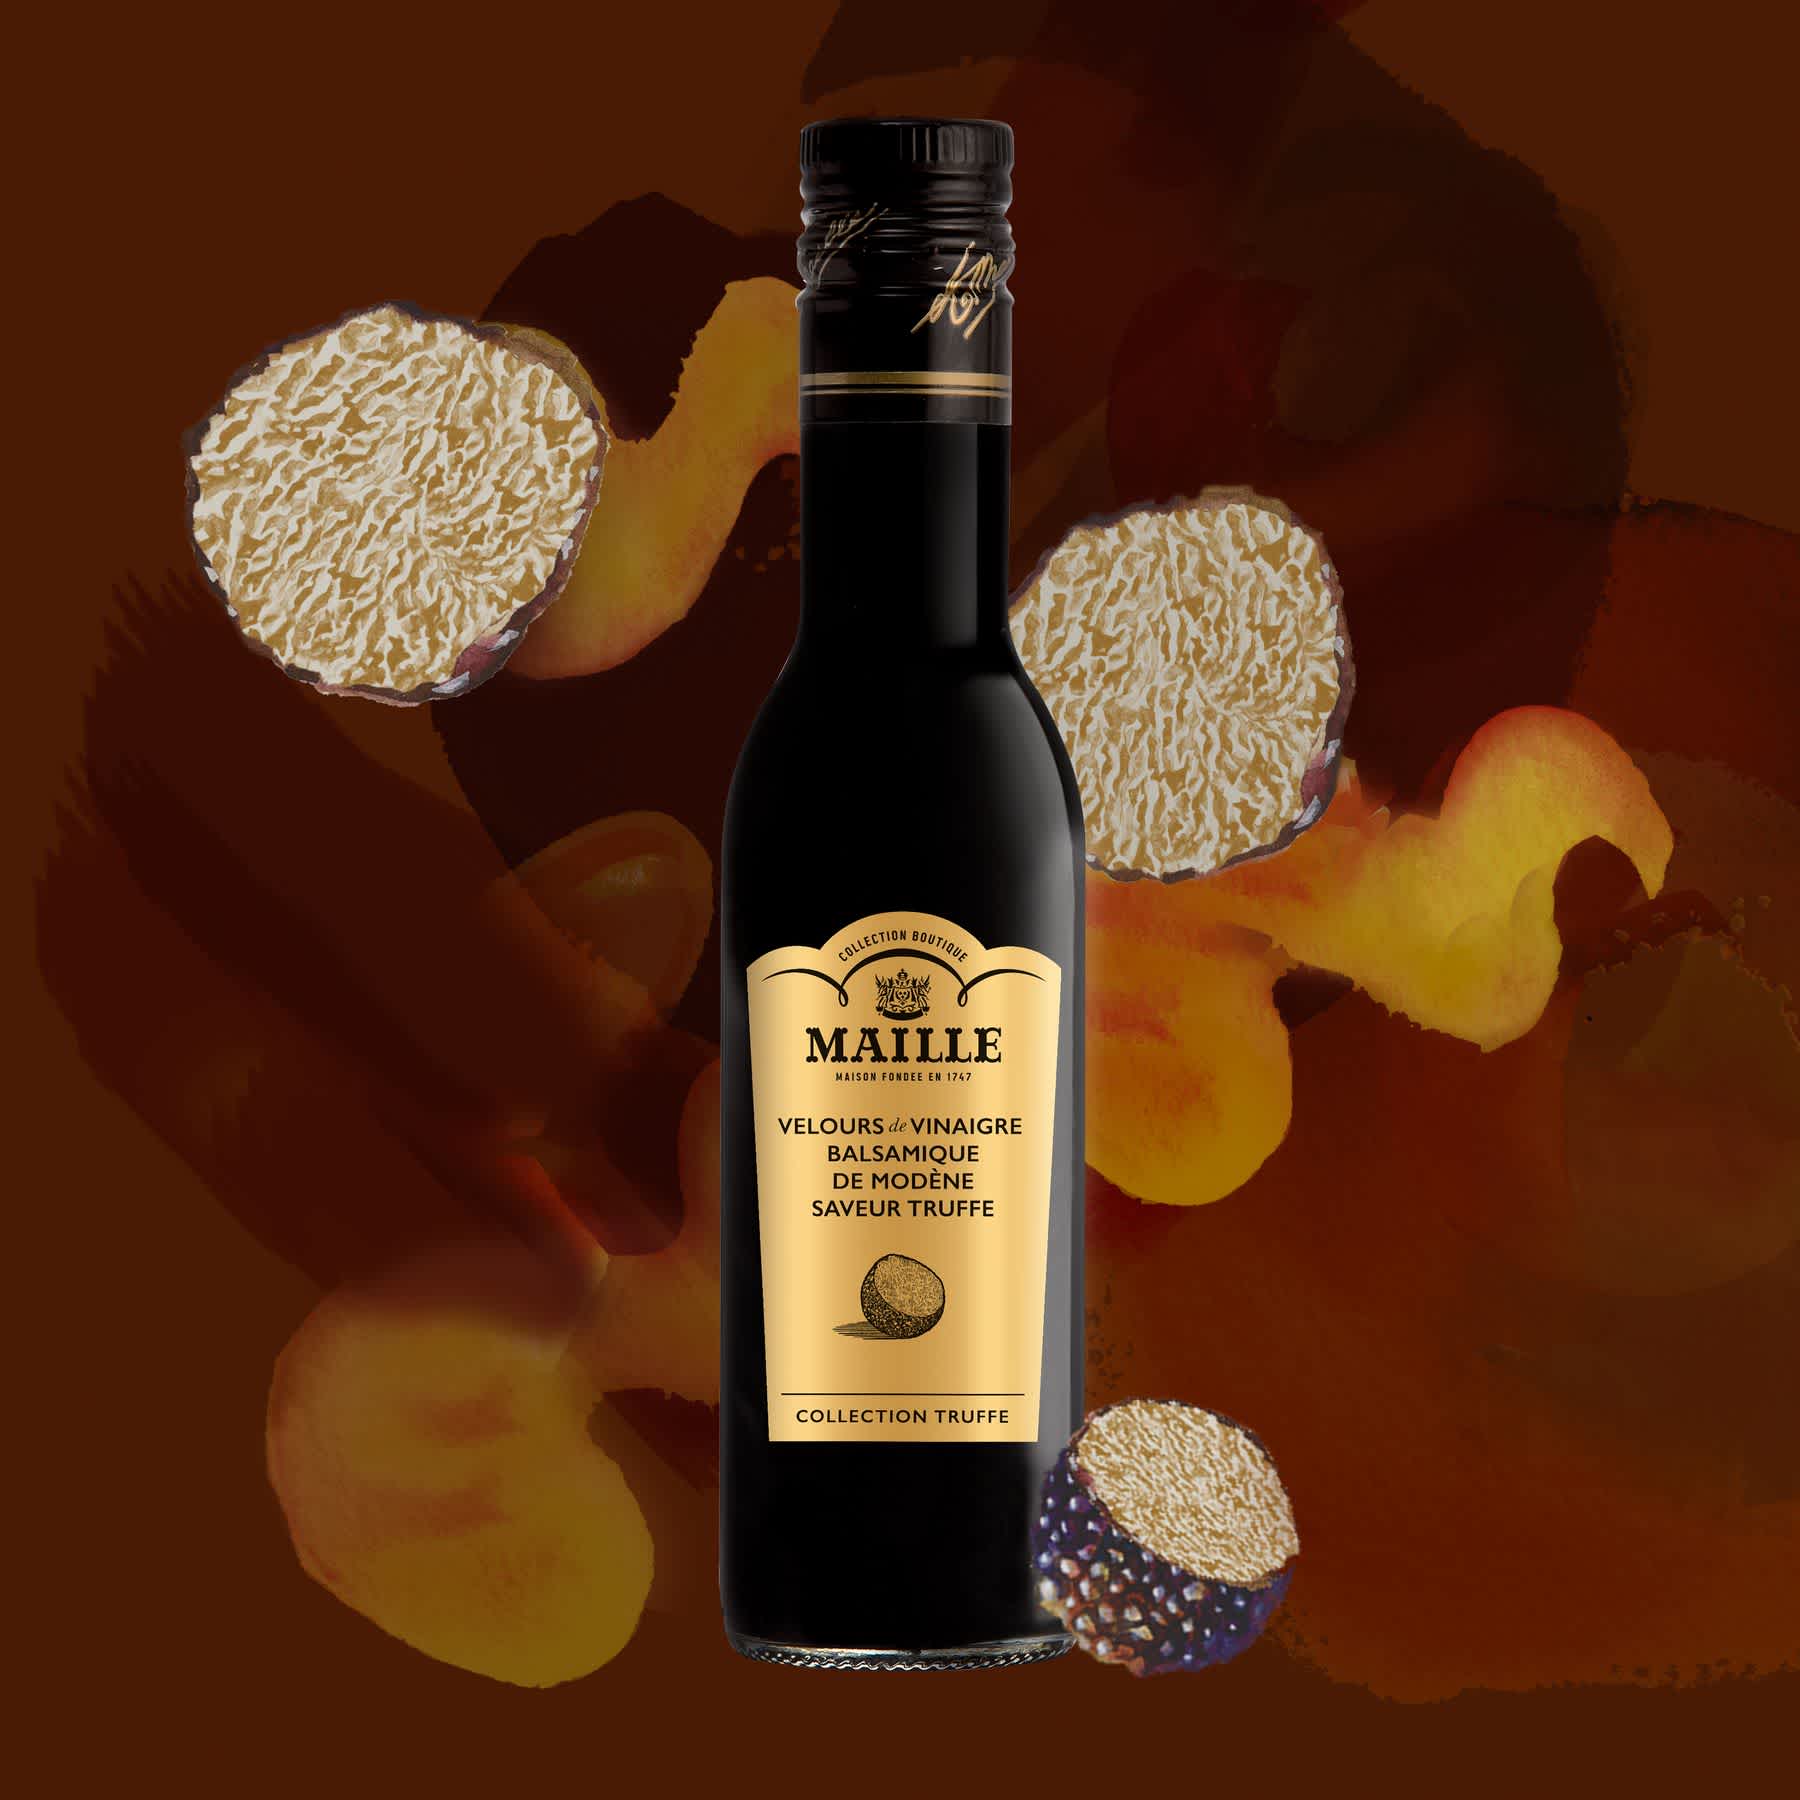 Maille - Velours de vinaigre balsamique de modene saveur truffe, 250 ml, illustration